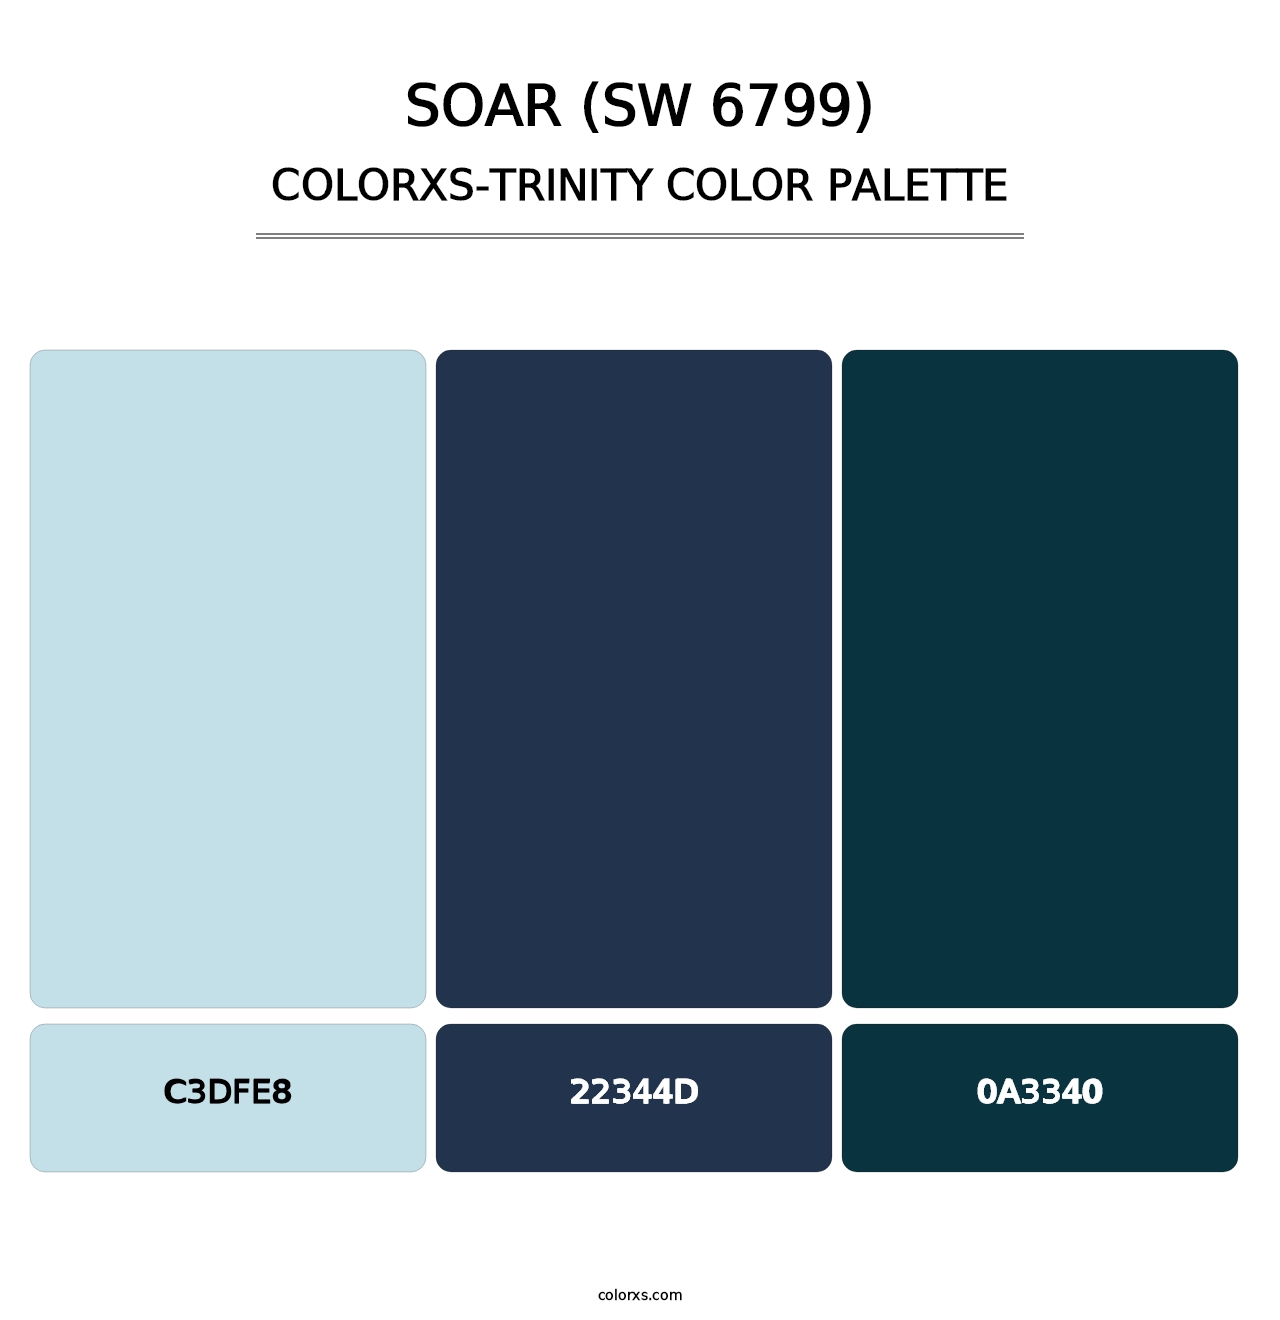 Soar (SW 6799) - Colorxs Trinity Palette